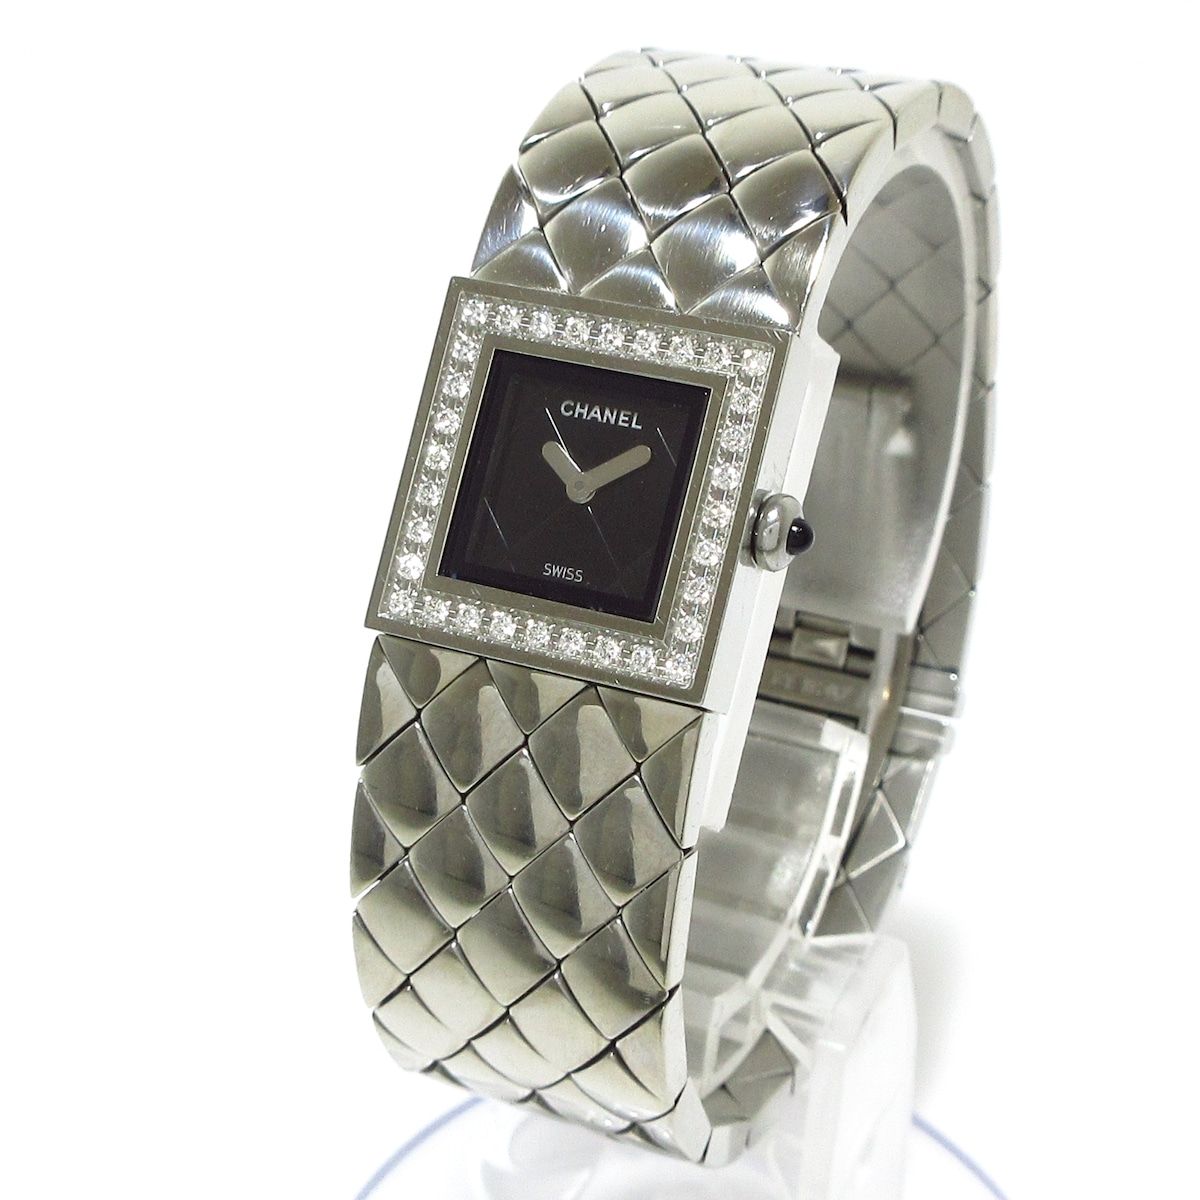 CHANEL(シャネル) 腕時計 マトラッセ H0489 レディース SS/ダイヤ ...